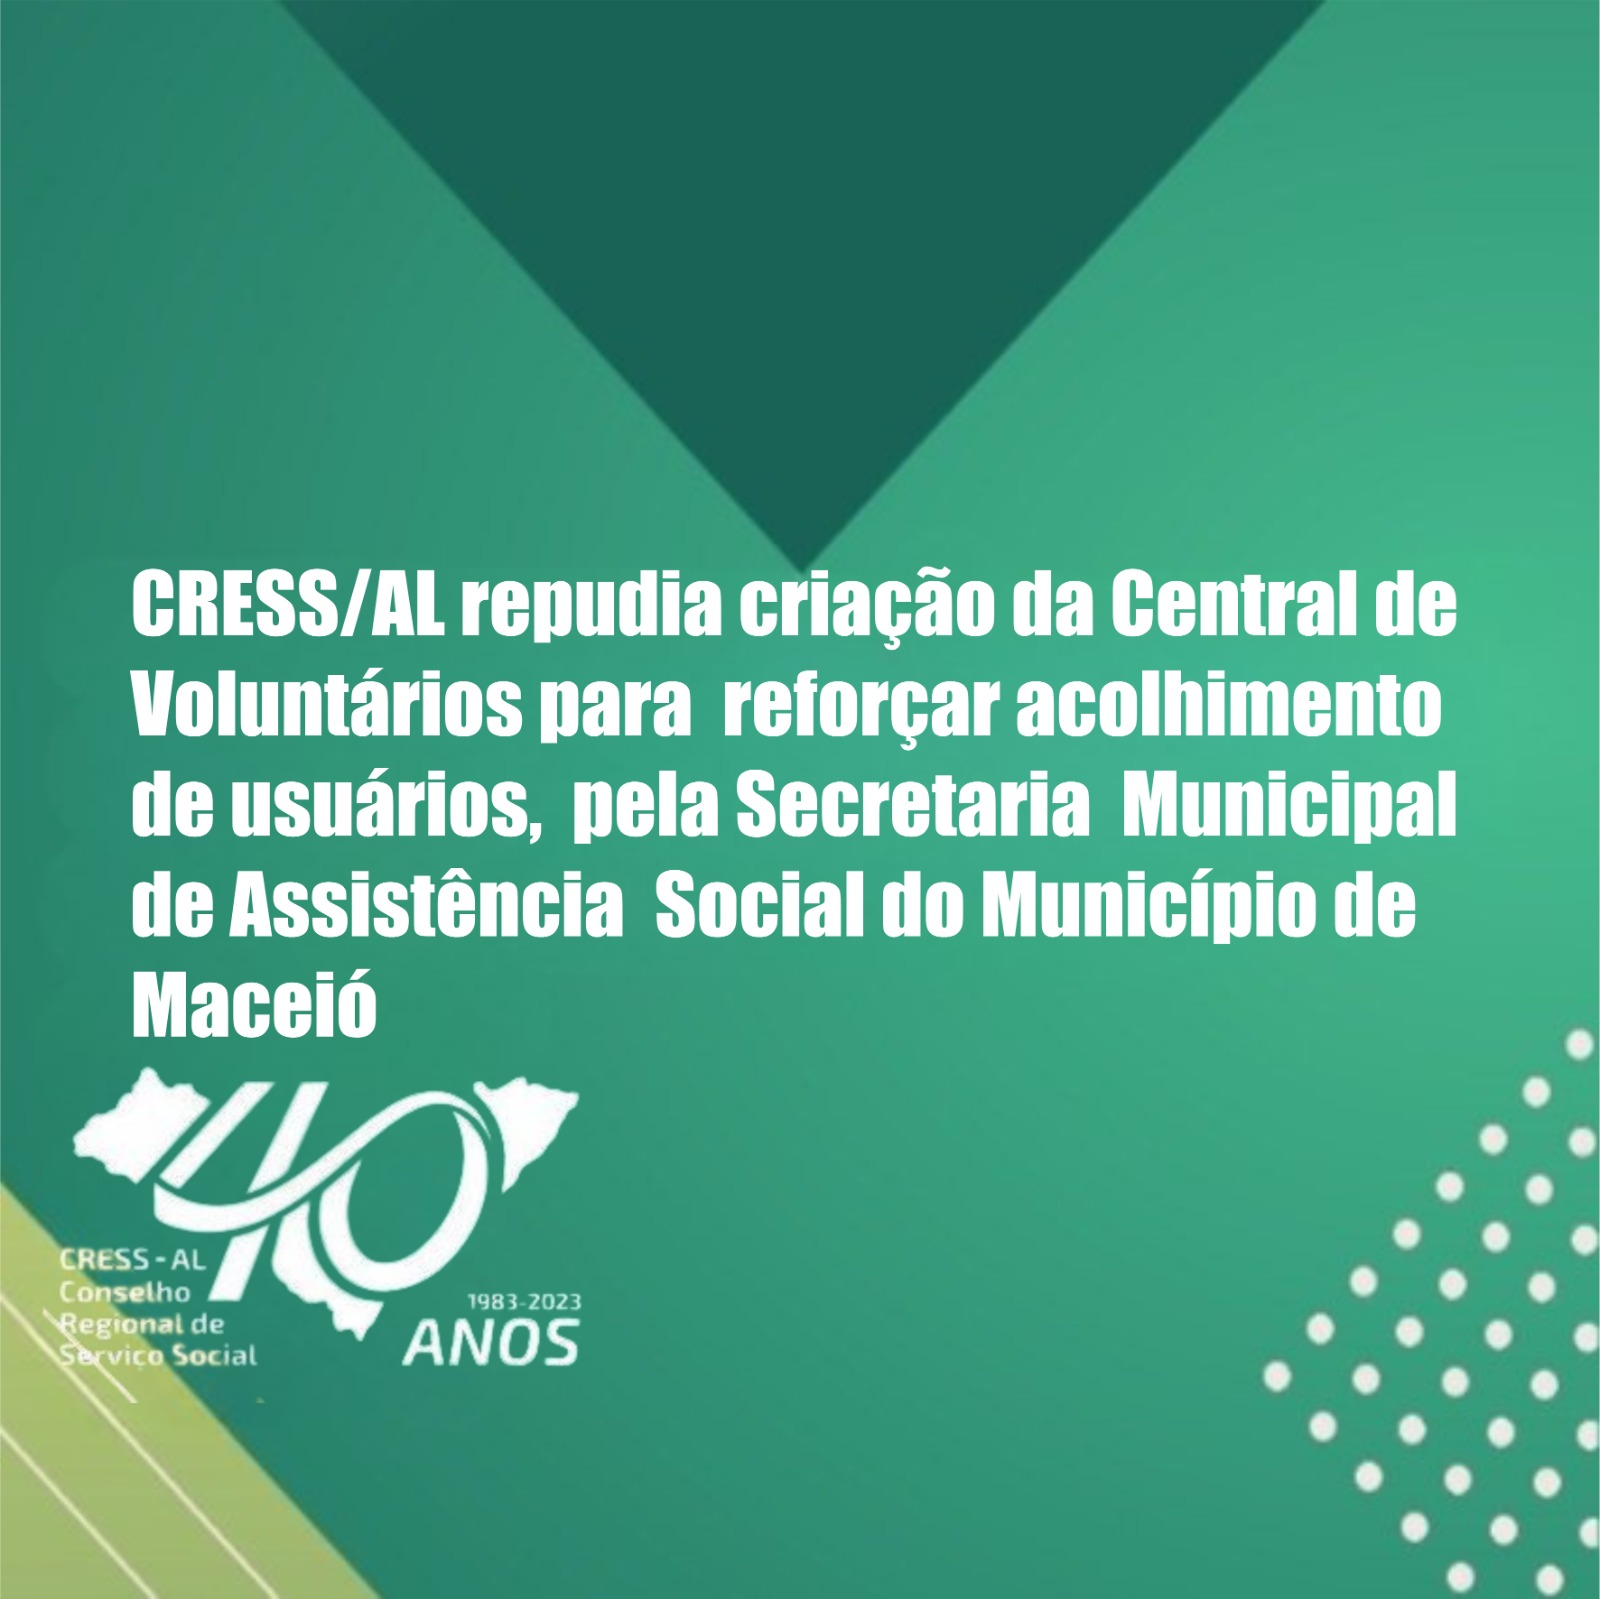 CRESS/AL repudia criação da Central de Voluntários para reforçar acolhimento de usuários, pela Secretaria Municipal de Assistência Social do Município de Maceió